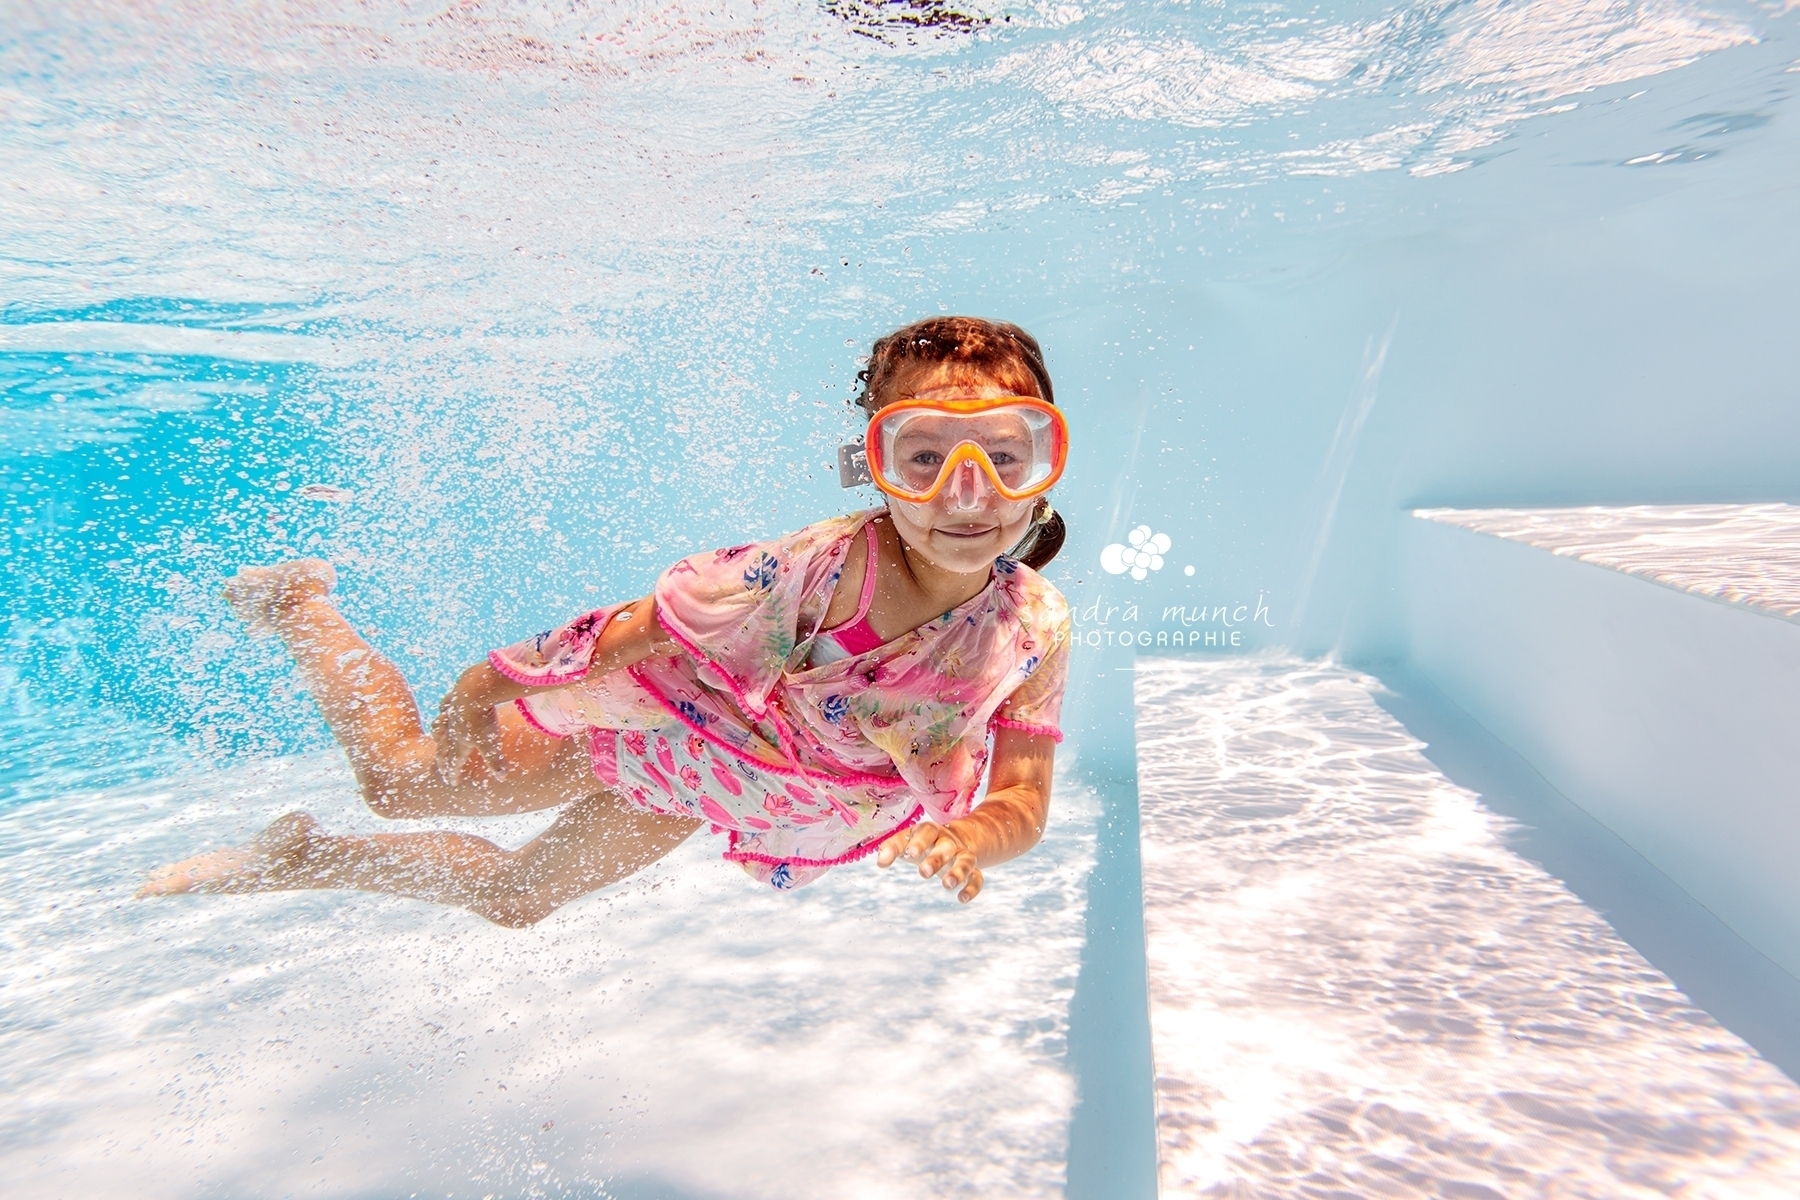 séance photo underwater d'un enfant qui sourit sous l'eau